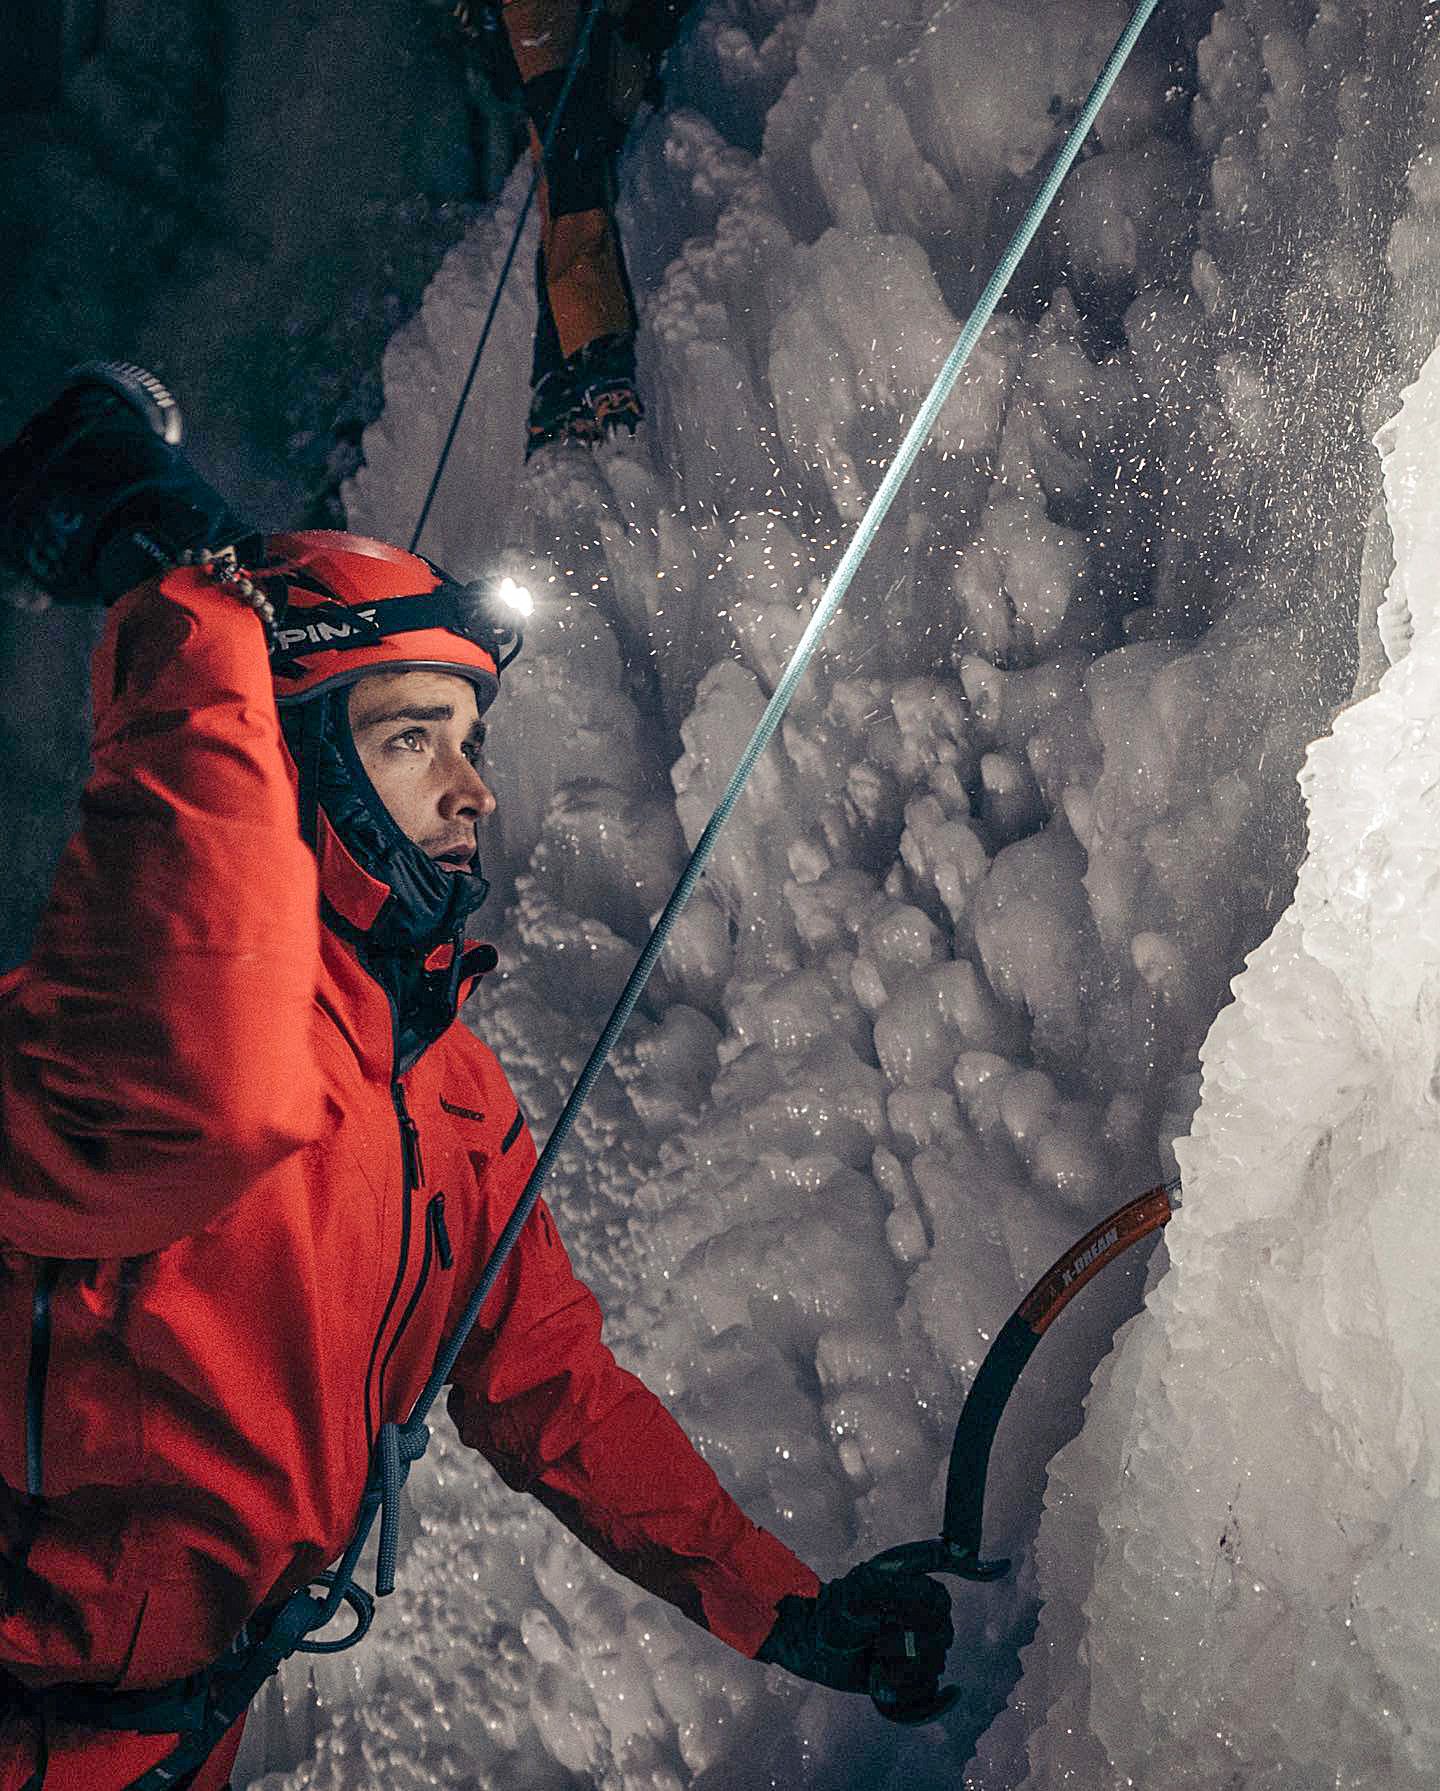 Az adrenalinfüggő versenyző az Alpokban kipróbálta a gleccsermászást is /Fotó: Facebook